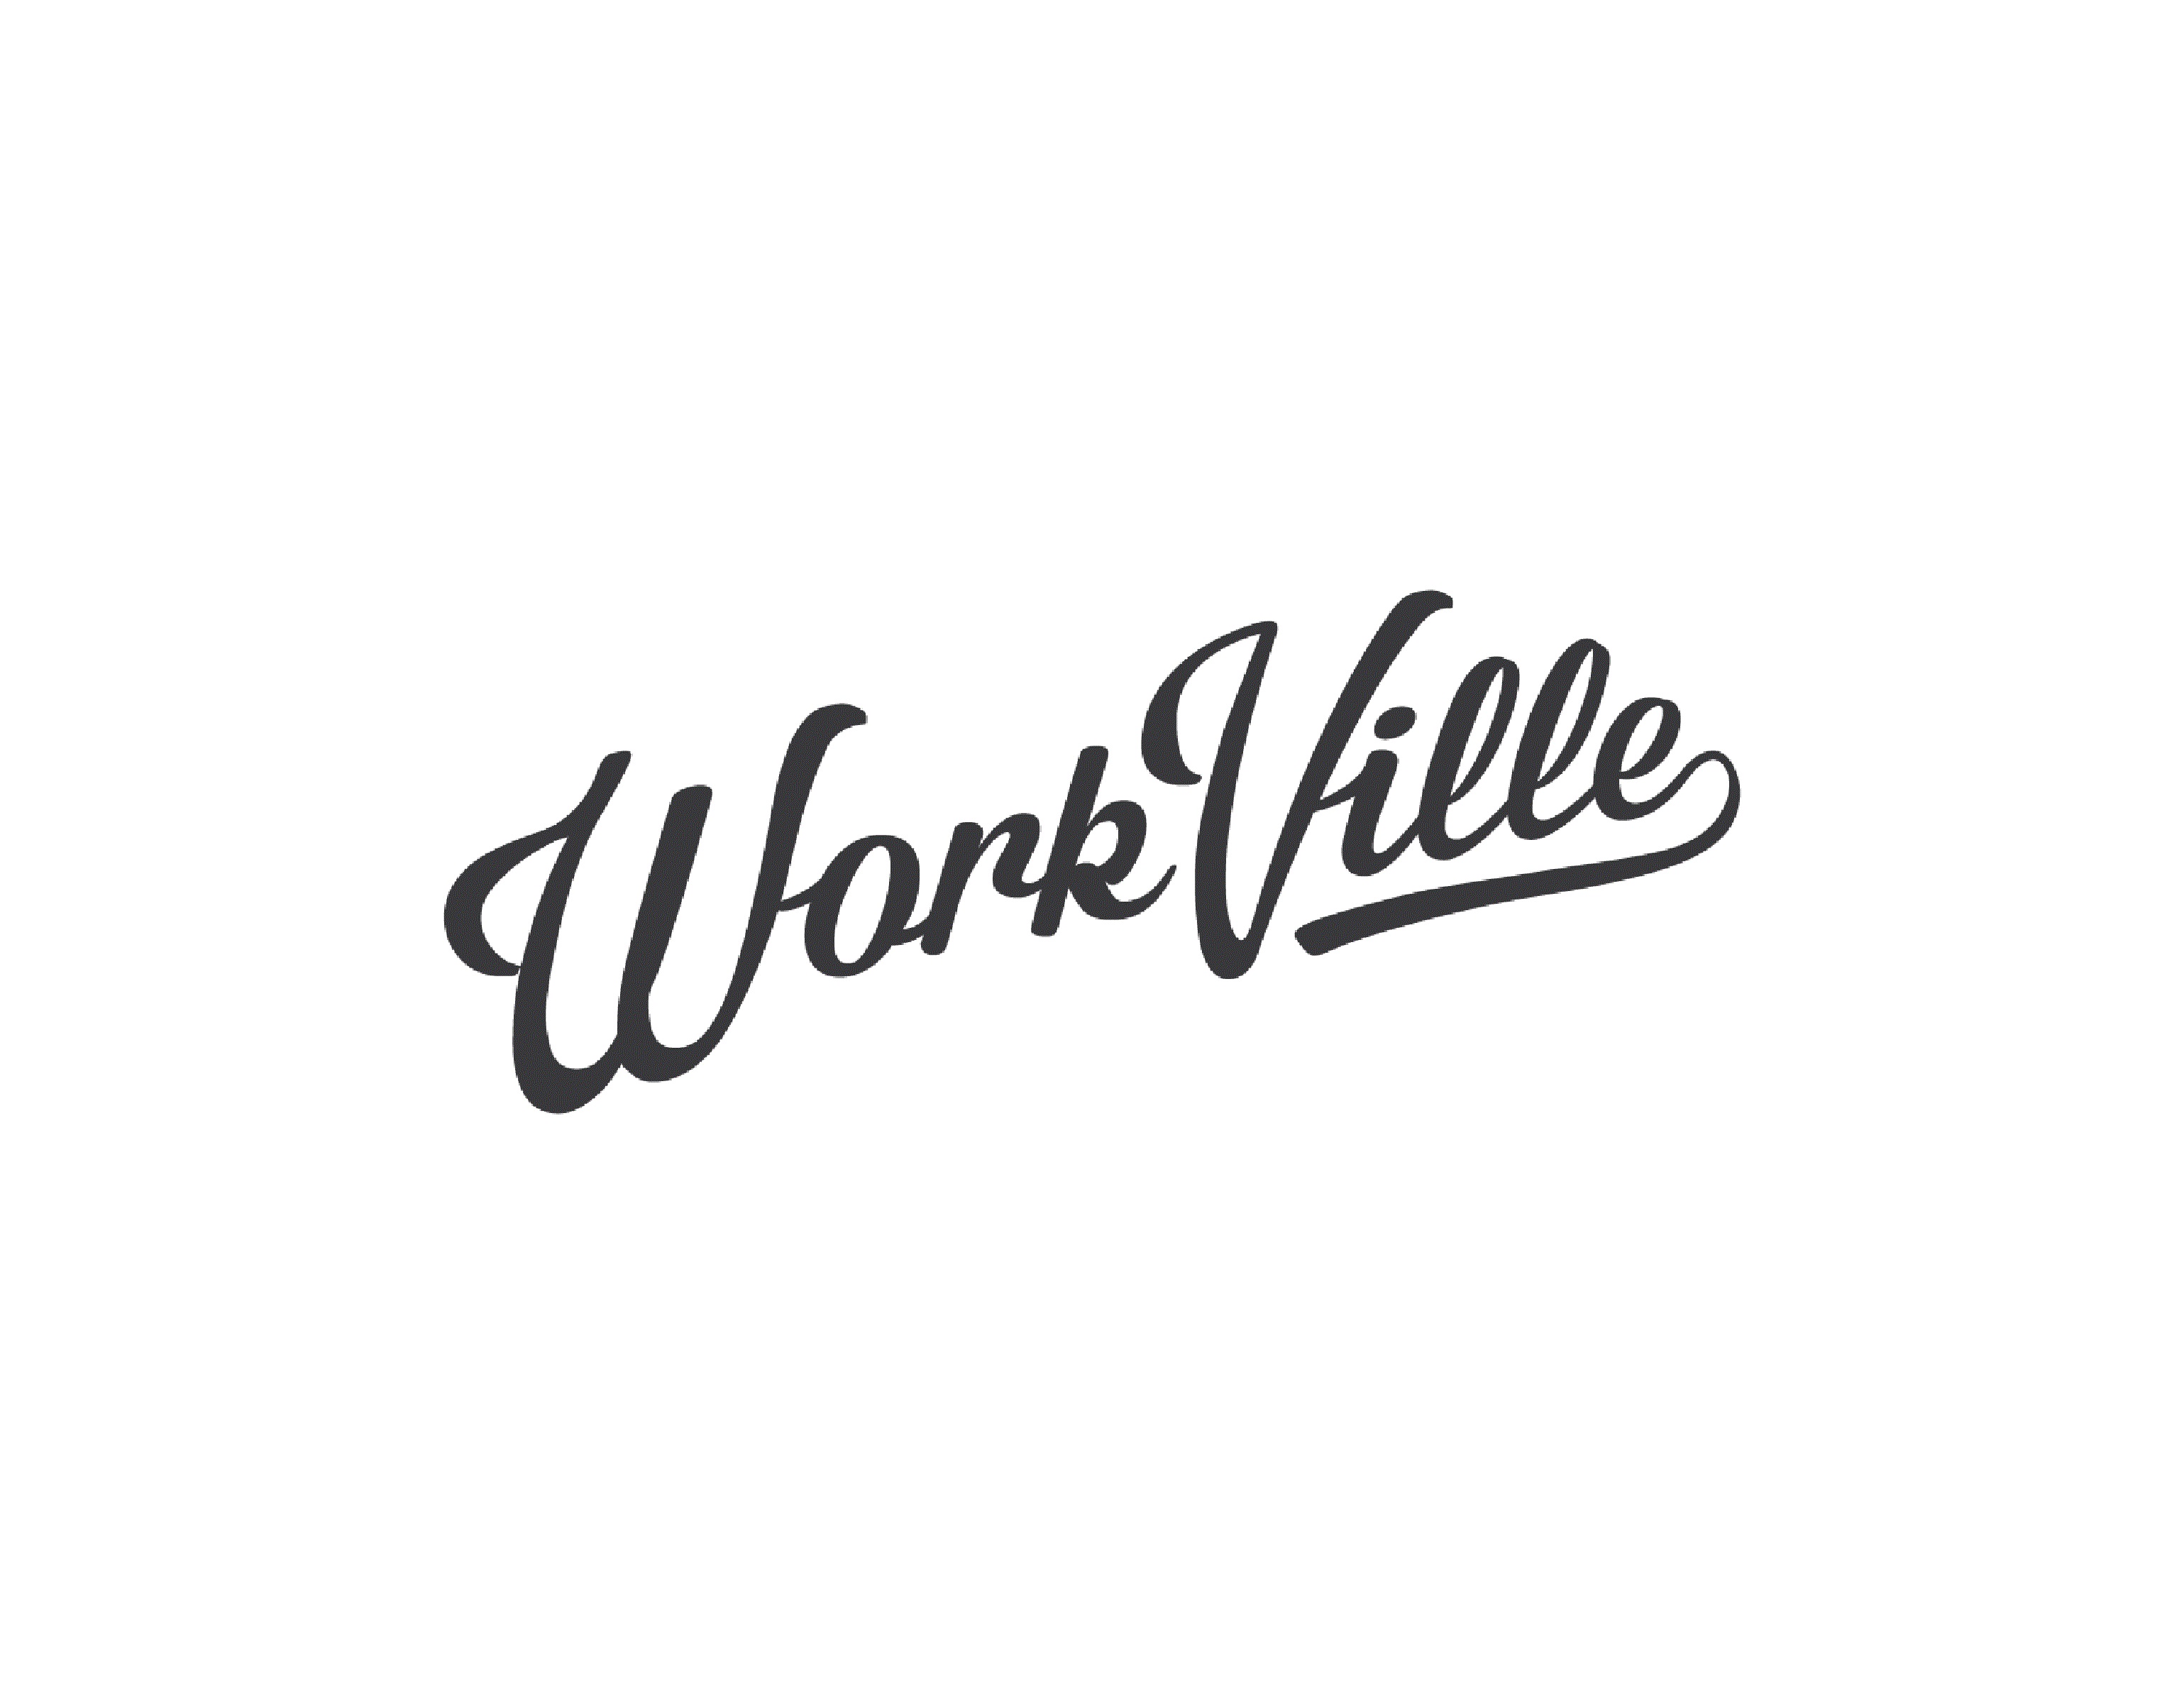 Workville